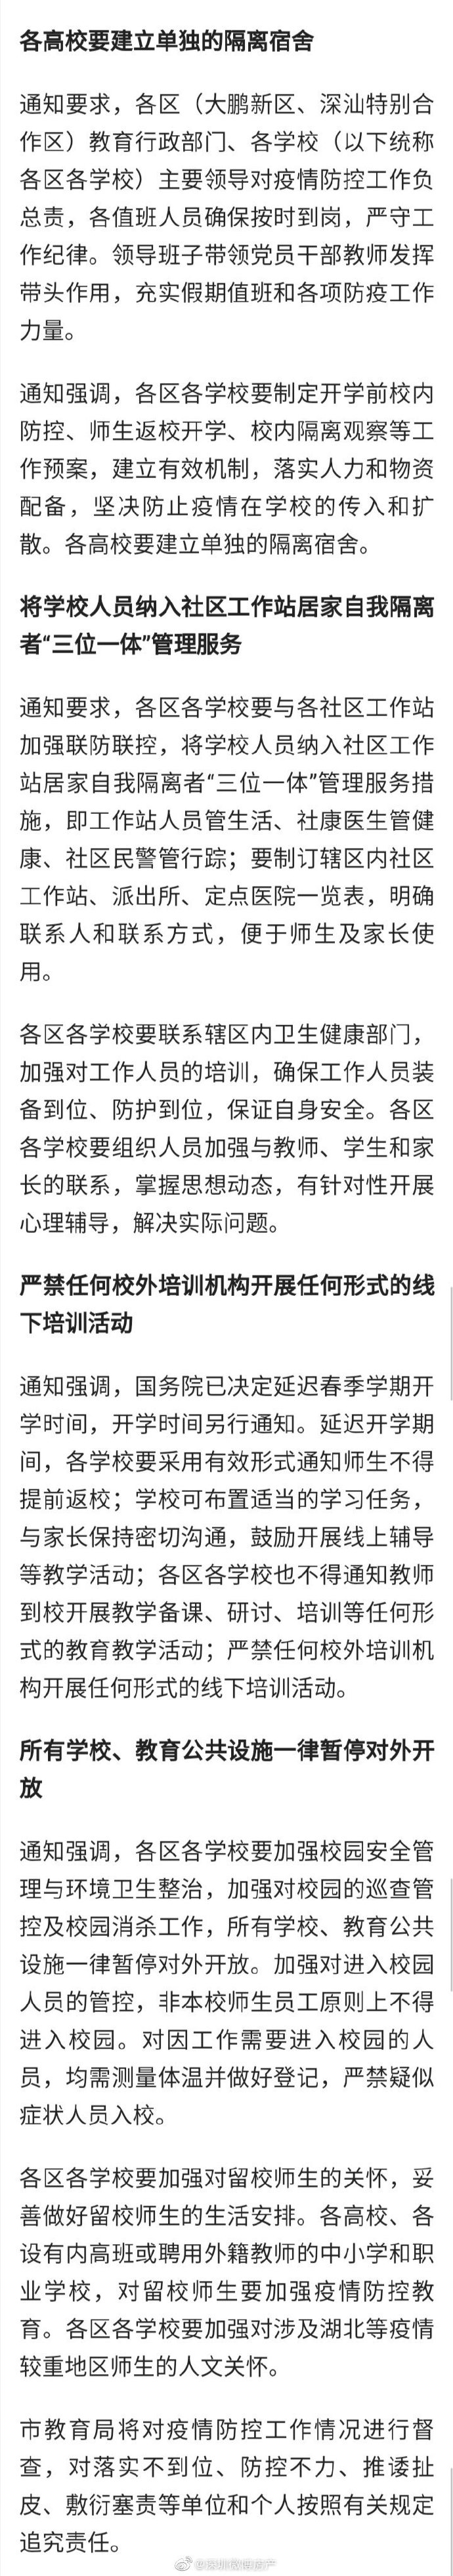 深圳教育局发布延迟开学通知  所有学校、教育公共设施暂停开放